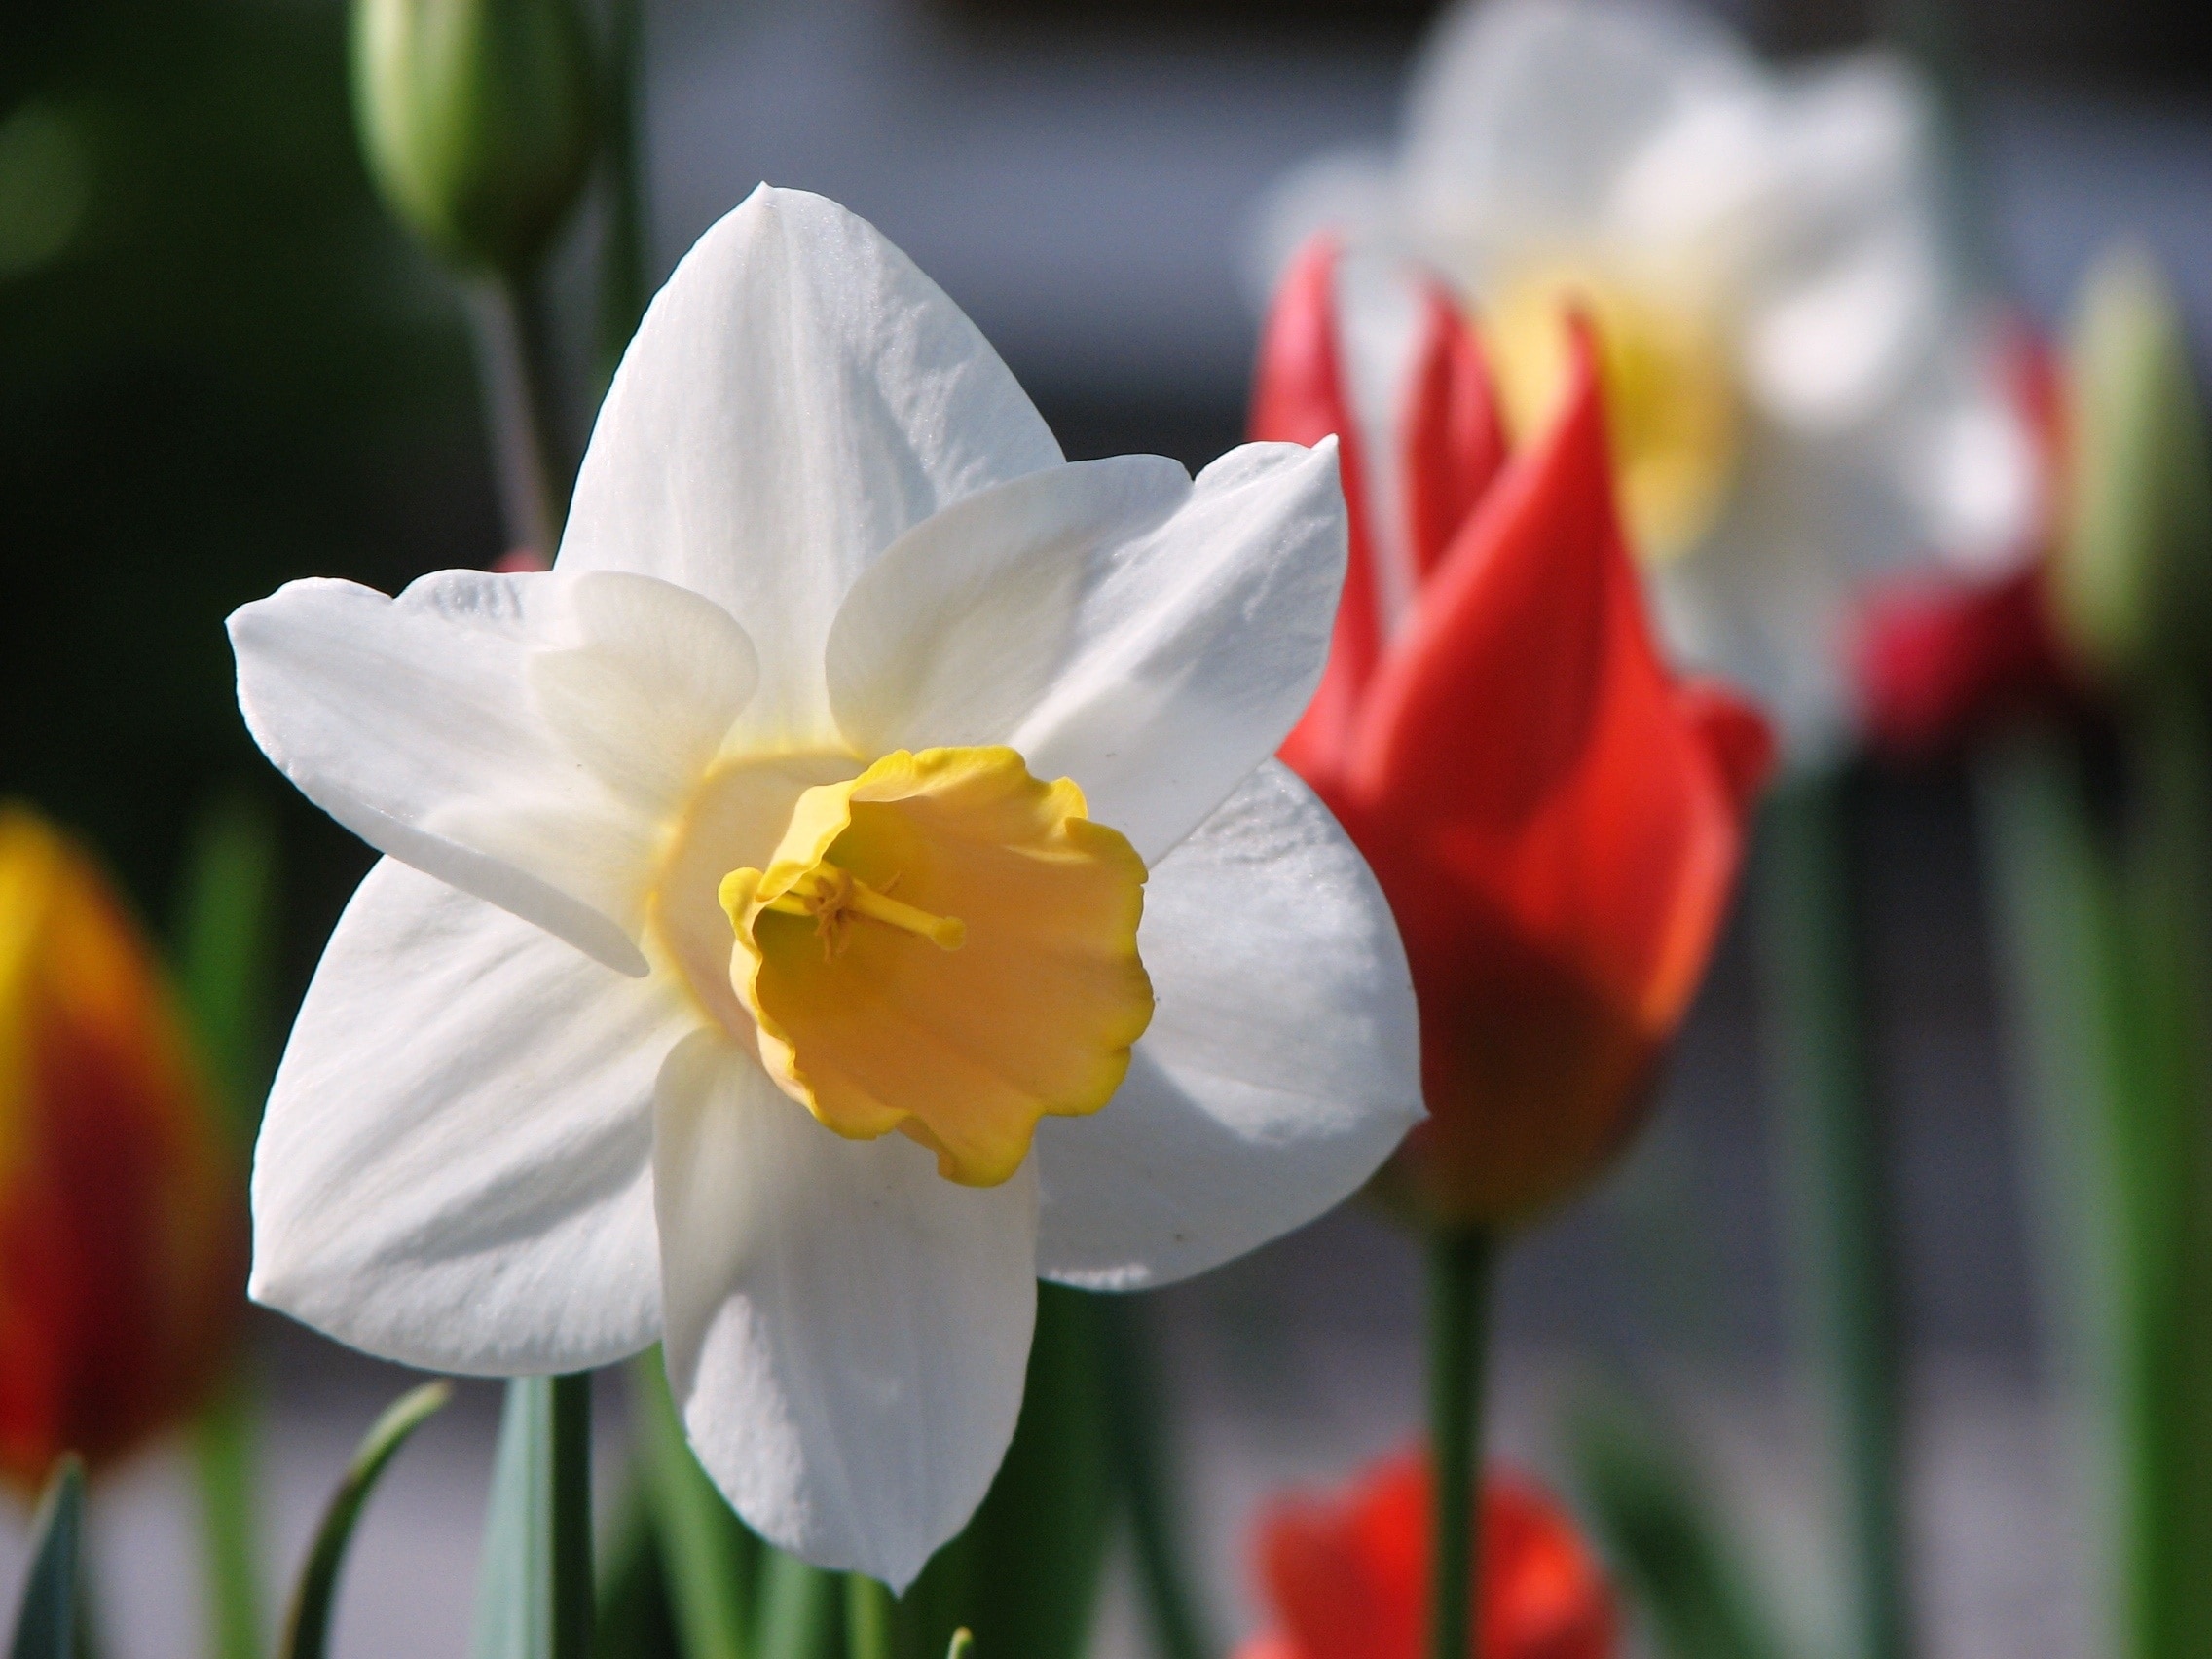 Flower, Narcissus, Spring, White, flower, petal